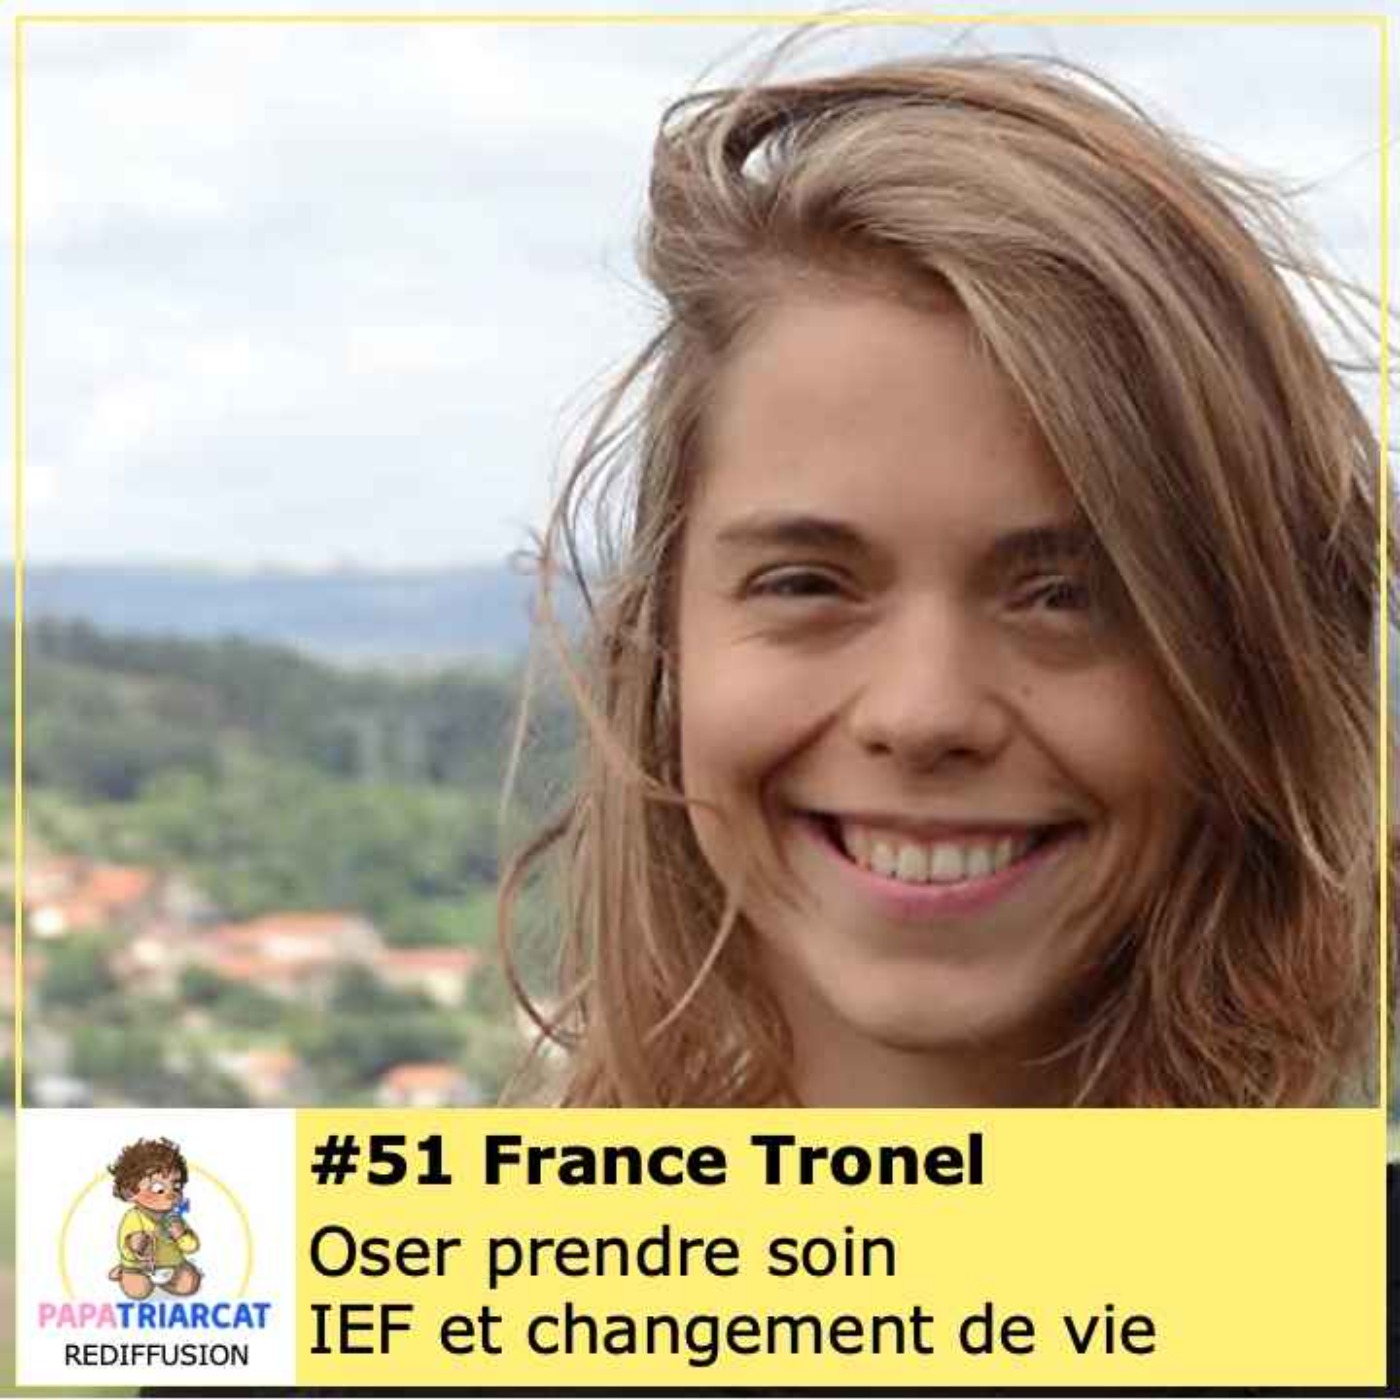 REDIFFUSION #51 - Oser prendre soin, IEF et changement de vie - France Tronel